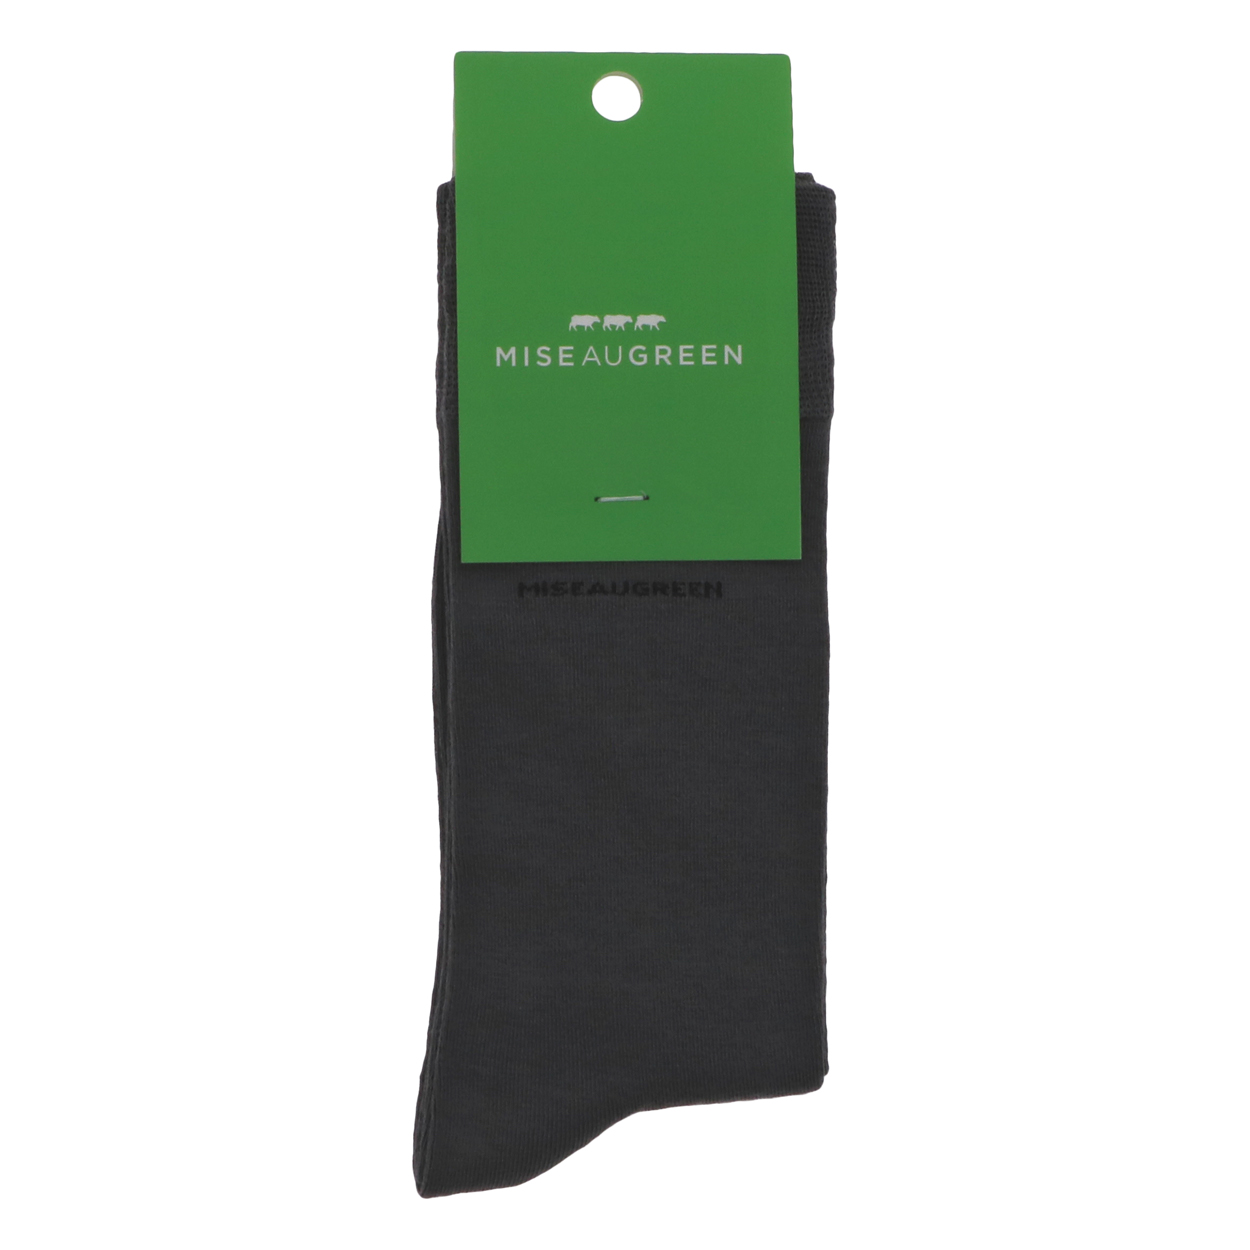 chaussettes hautes mise au green grises avec nom de la marque